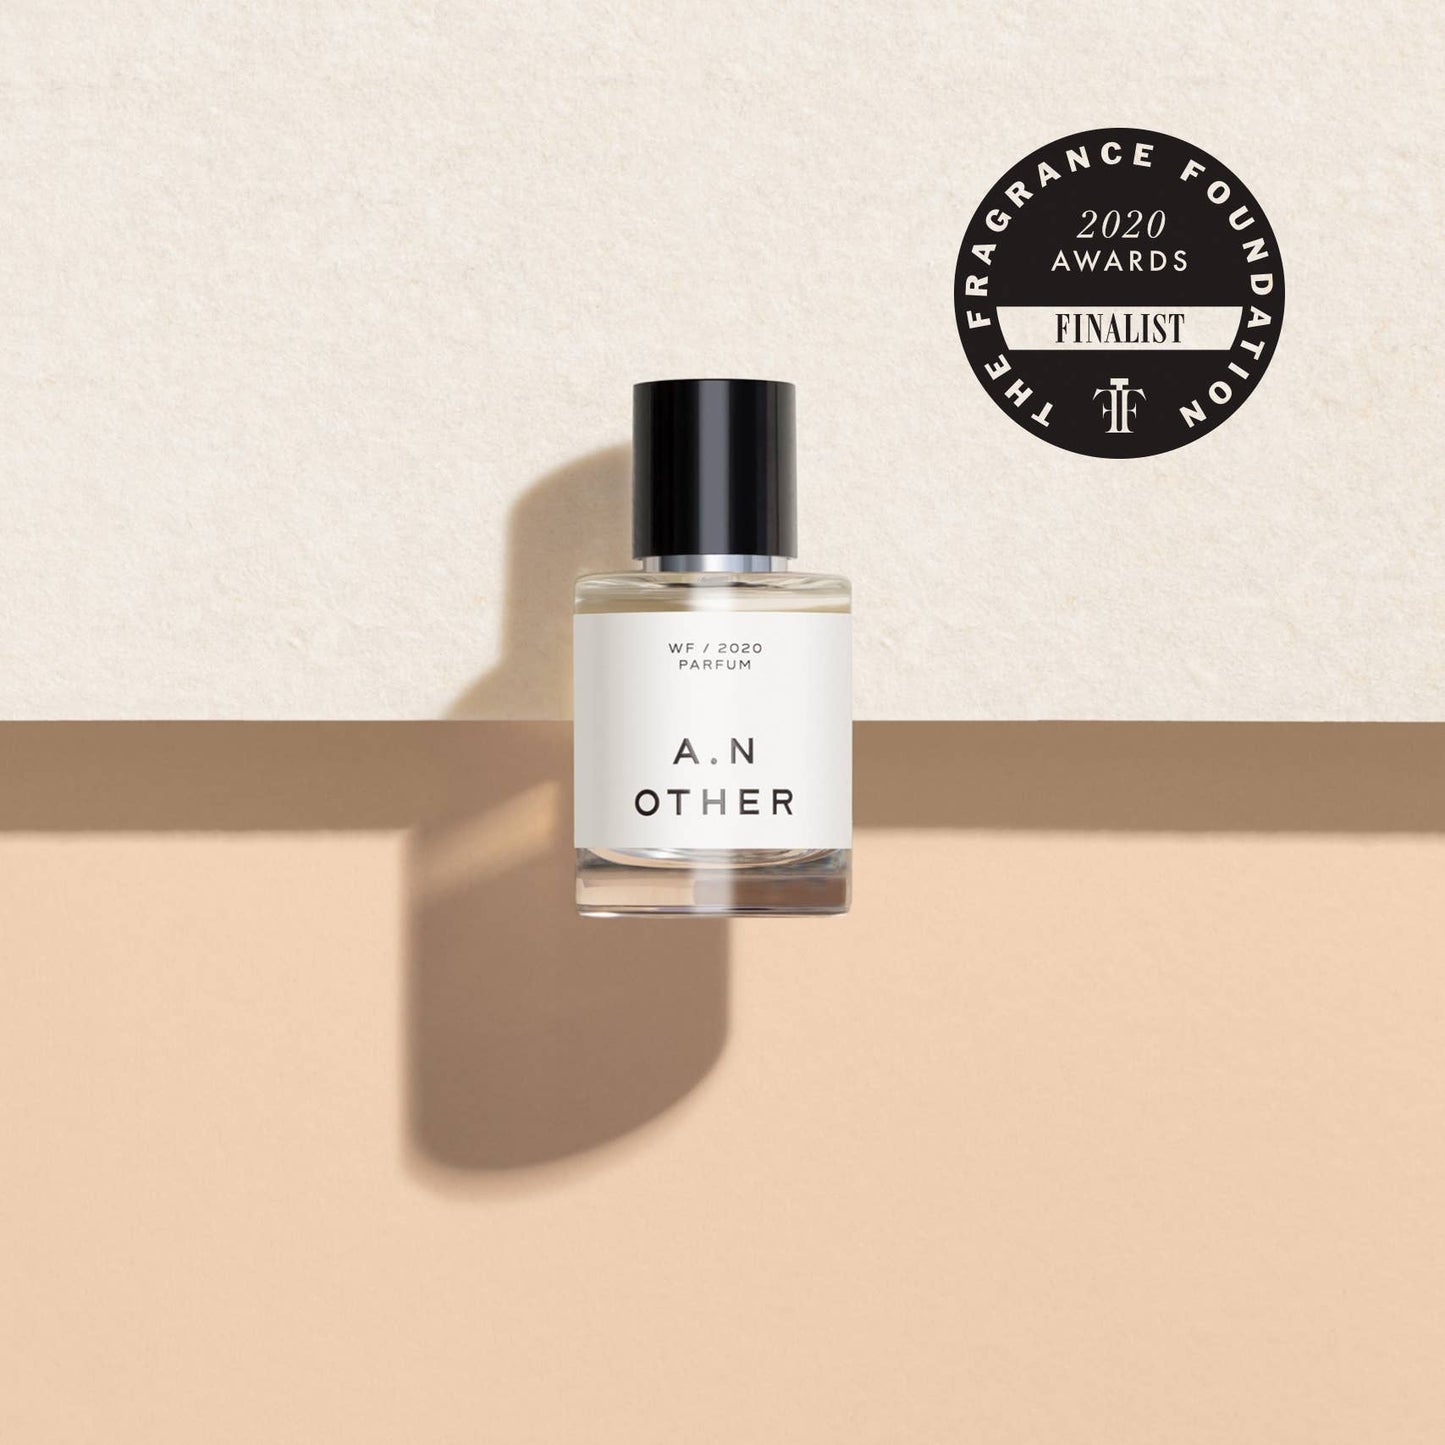 A. N. OTHER WF/2020 Parfum 50ml